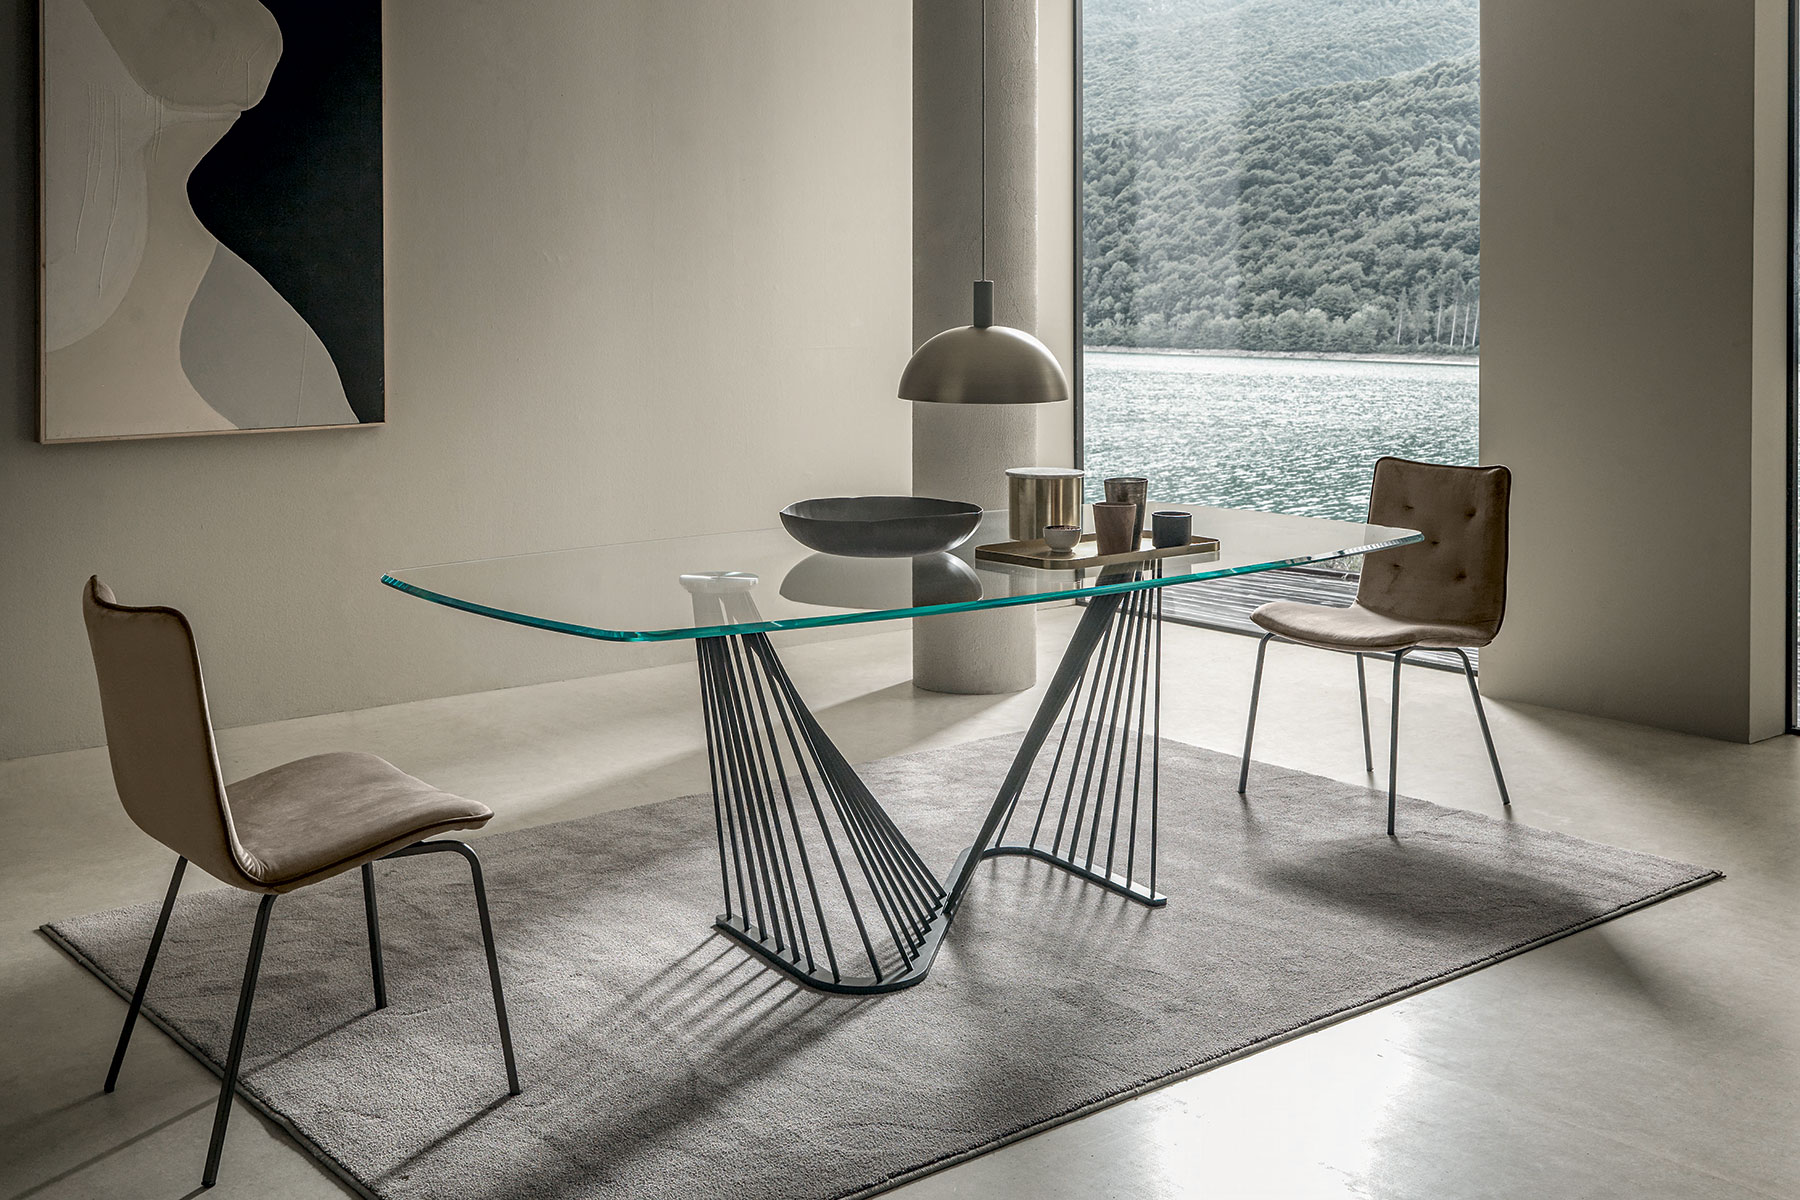 Base grigia, top in vetro trasparente. Andrea Lucatello ha creato un tavolo originale, sinuoso ed elegante per le case più raffinate. Consegna gratuita.